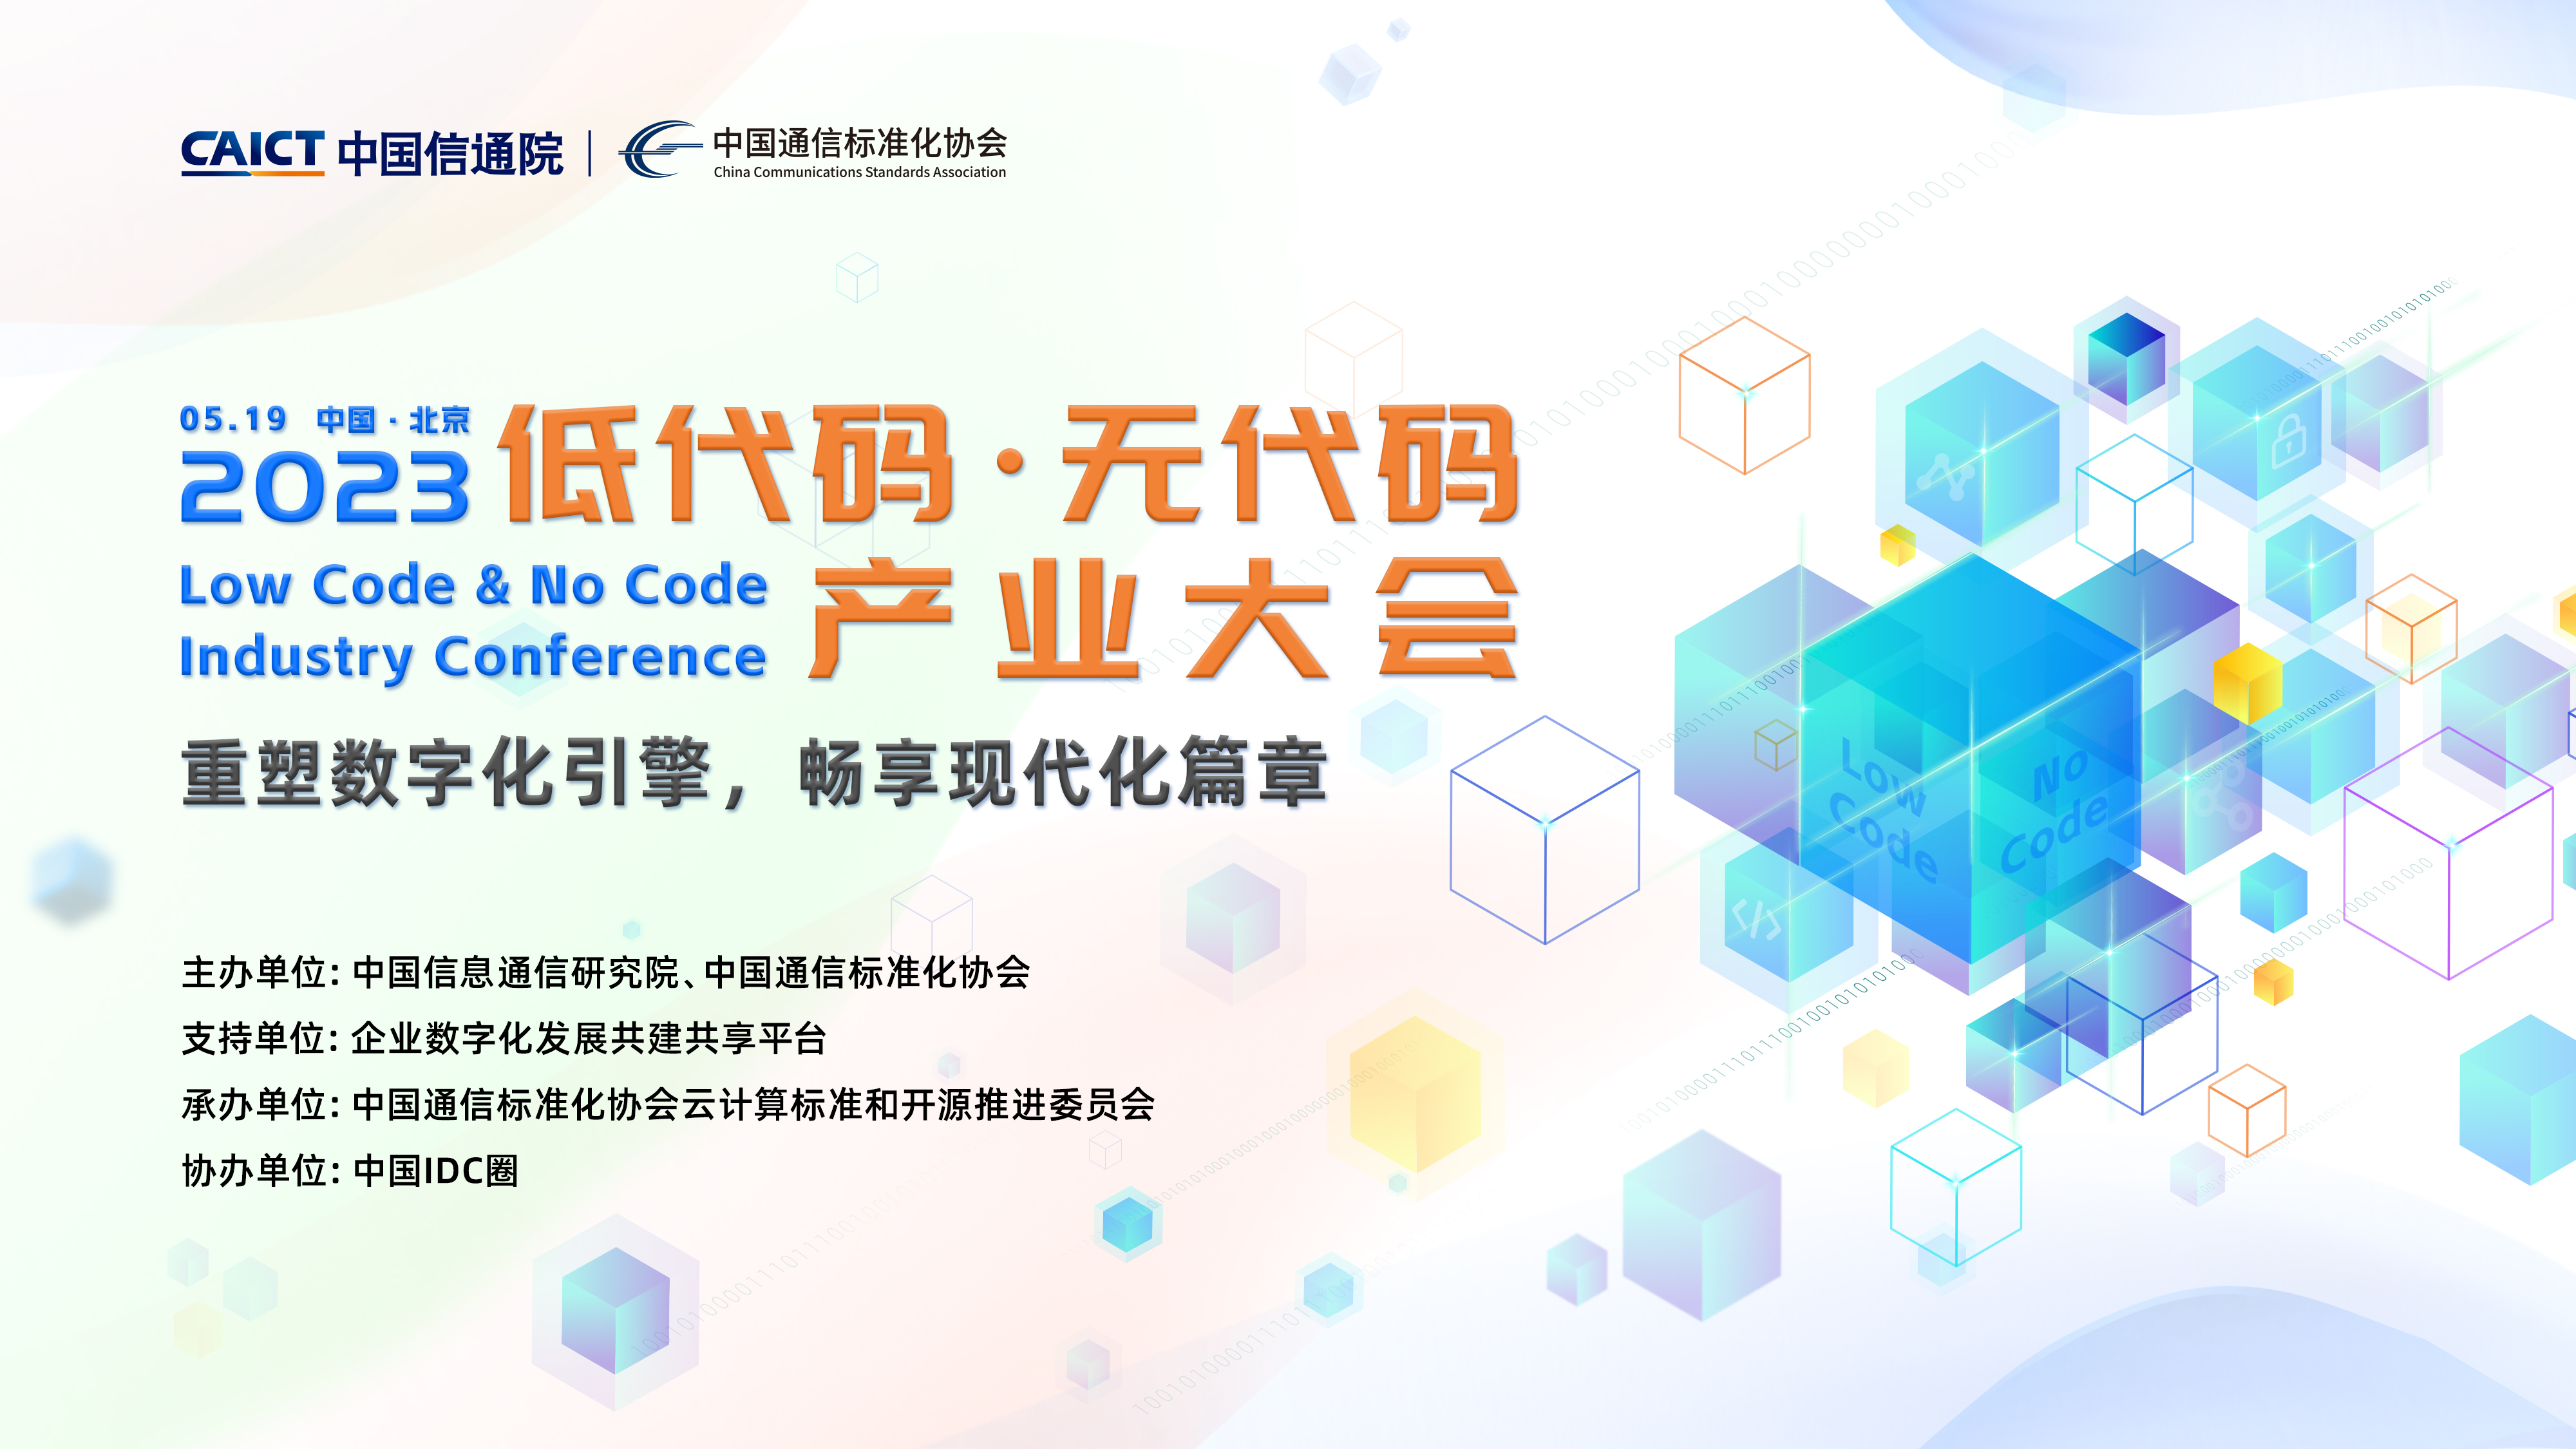 大会预告|中国信通院首届低代码·无代码产业大会将于5月19日在京举办